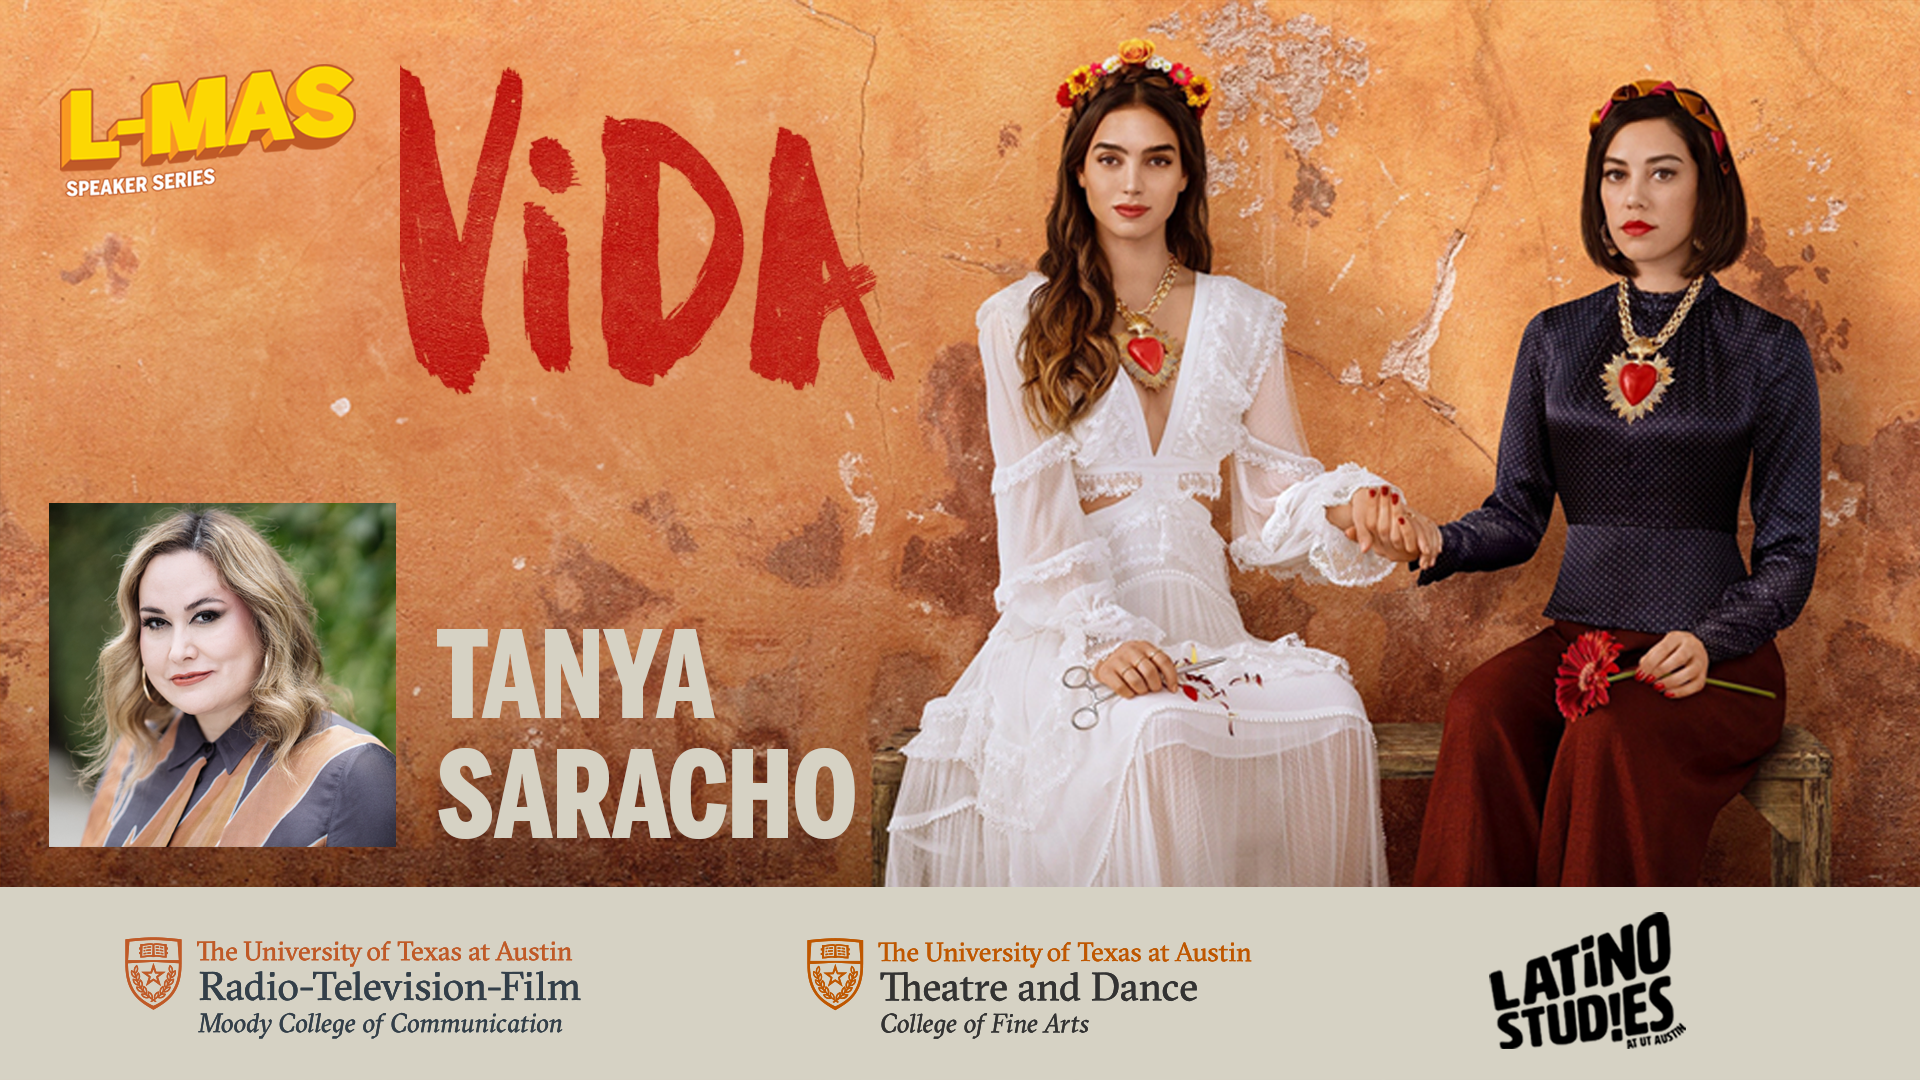 Vida and Tanya Saracho